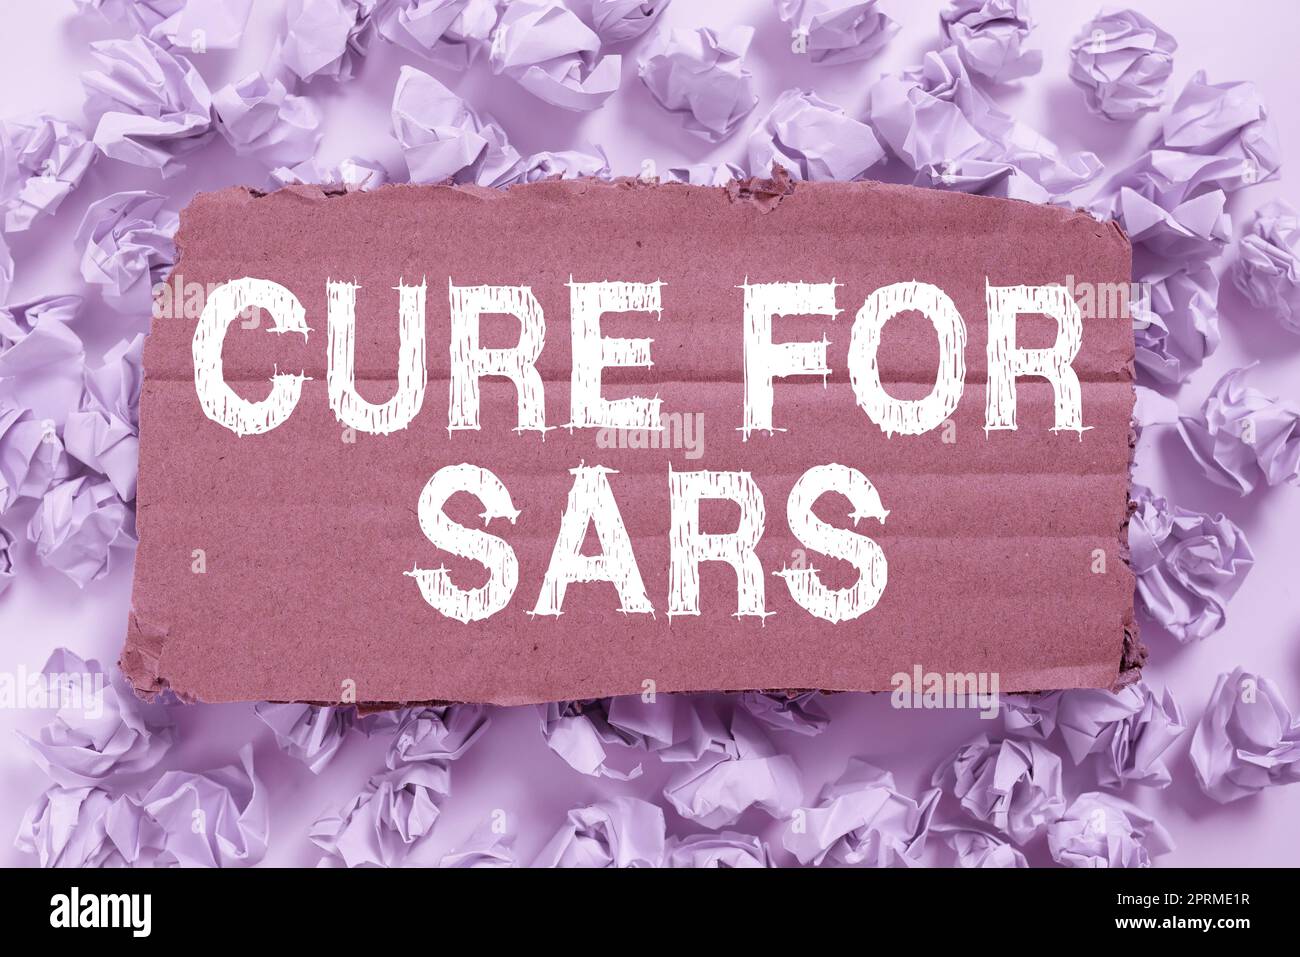 Textzeichen, das das Heilmittel für SARS anzeigt. Geschäftsansatz Medizinische Behandlung über schweres akutes Atemwegssyndrom Rahmen dekoriert mit bunten Blumen und Laub harmonisch angeordnet. Stockfoto